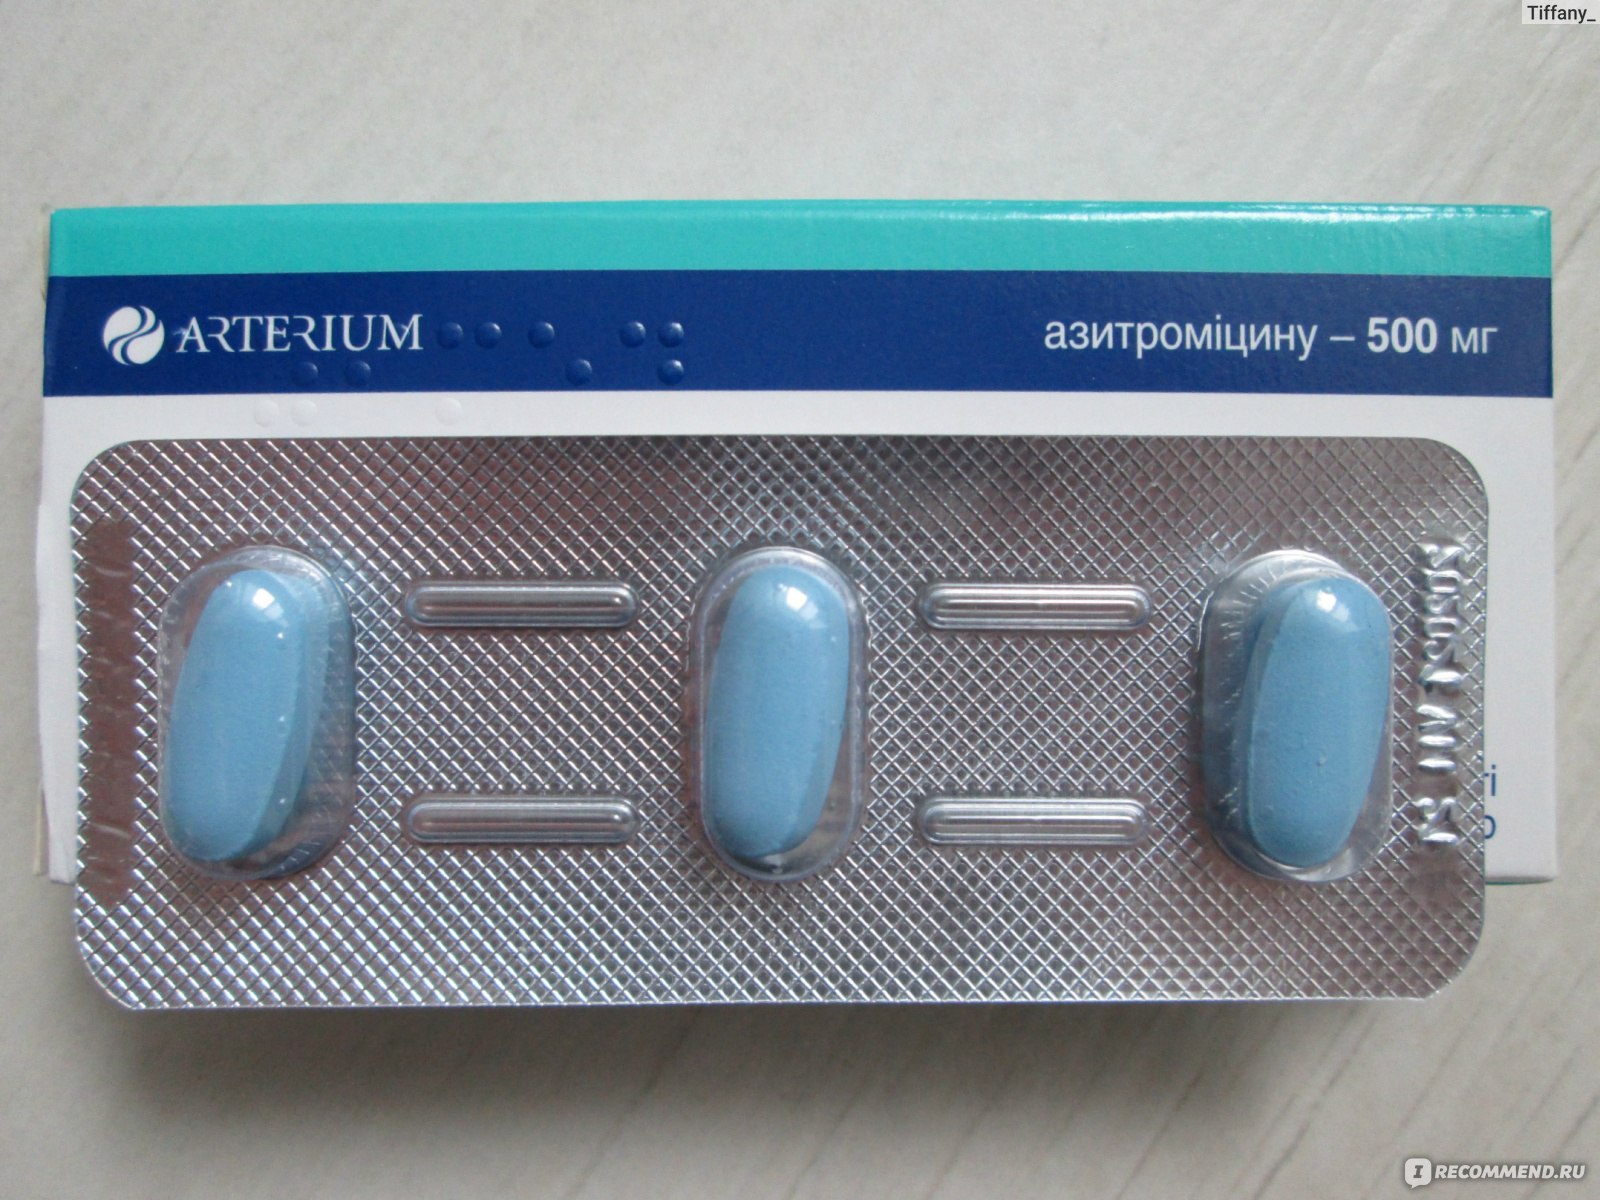 Купить таблетки антибиотики